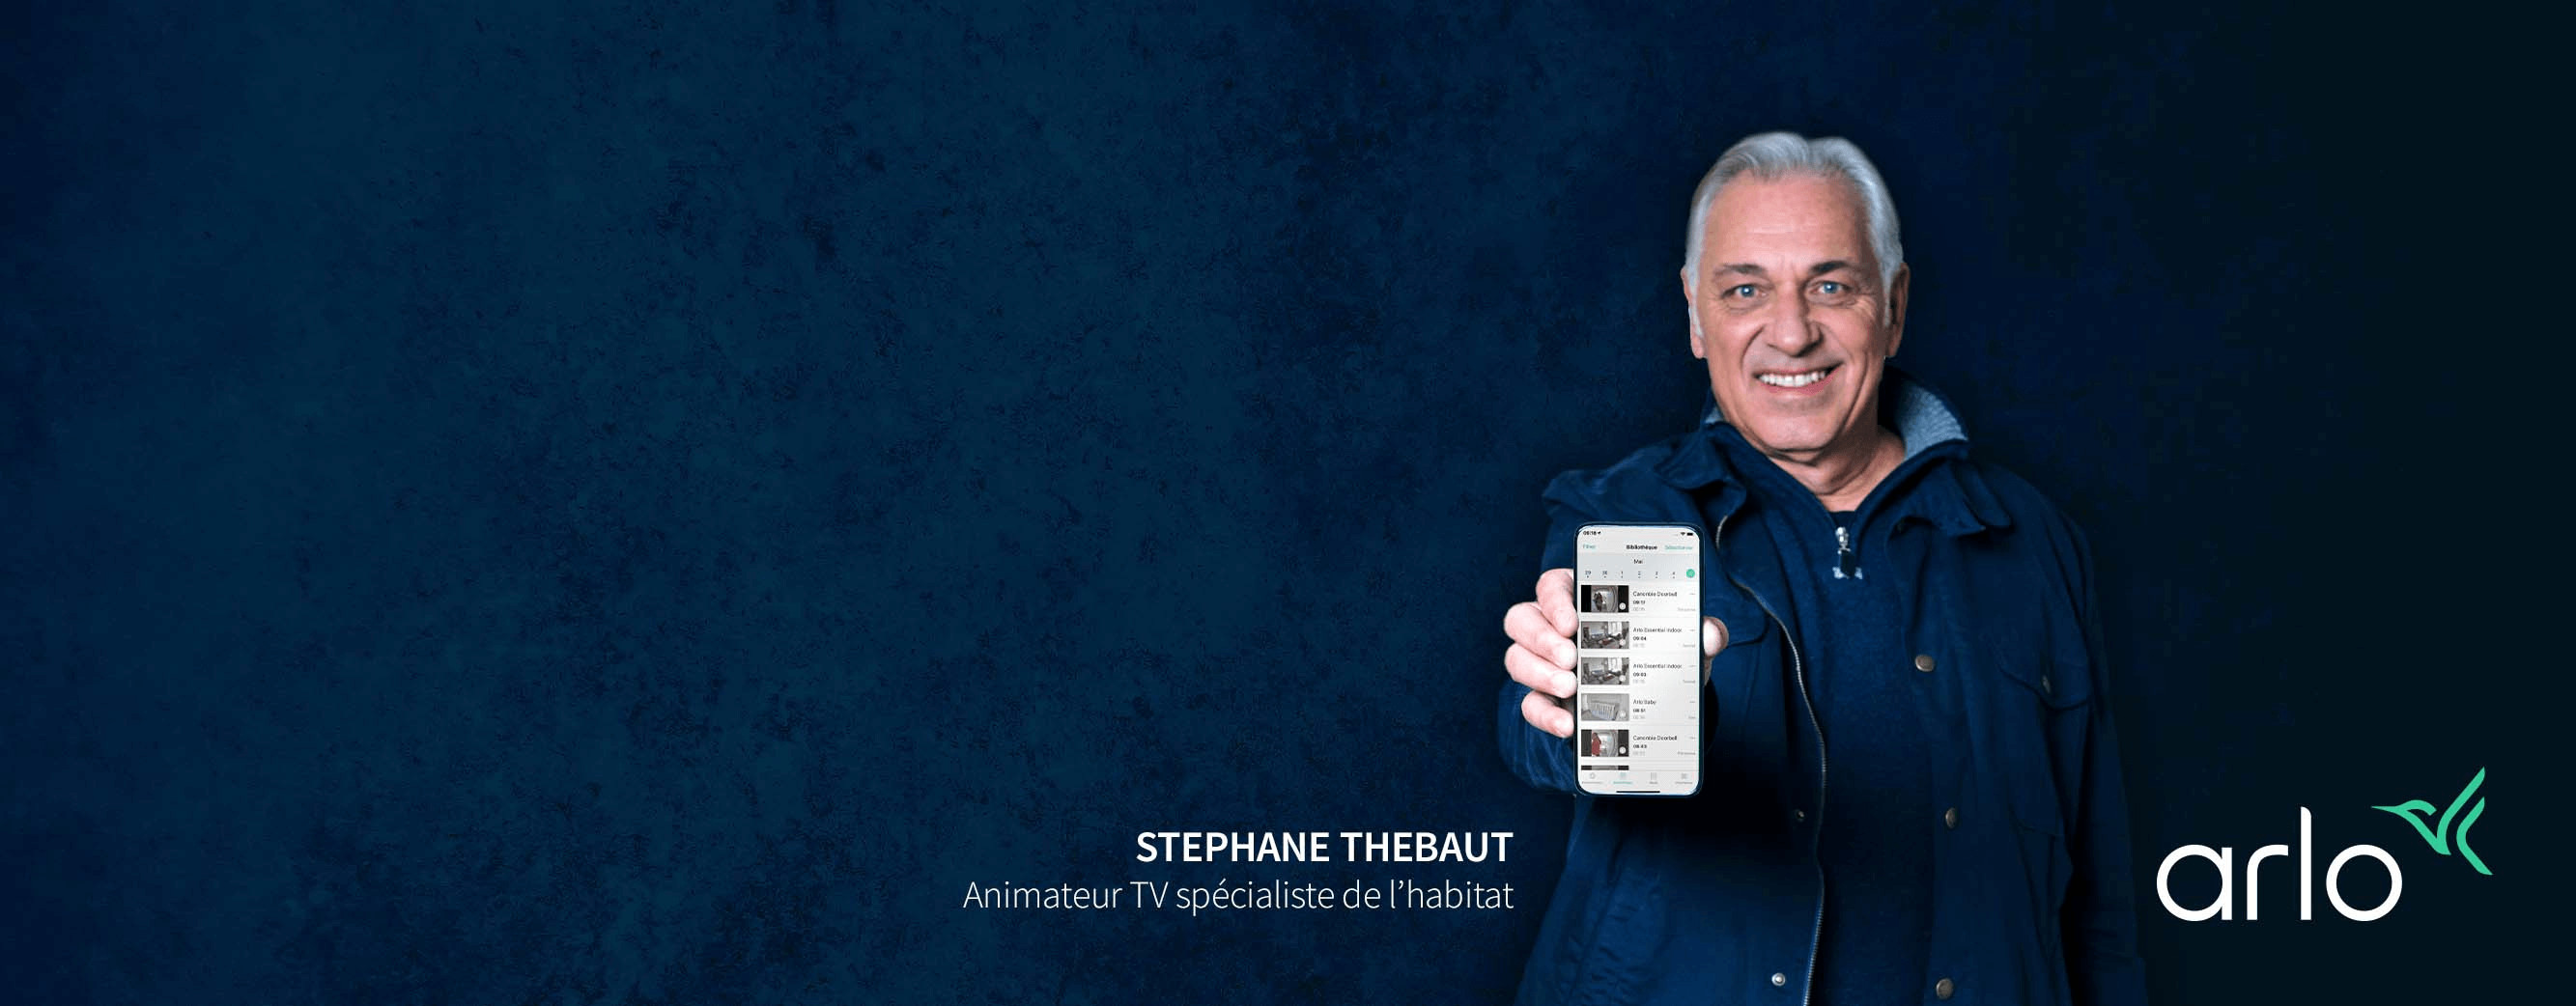 Stephane Thebaut,  architecte influent à la télévision, recommande les produits Arlo pour la sécurité domestique